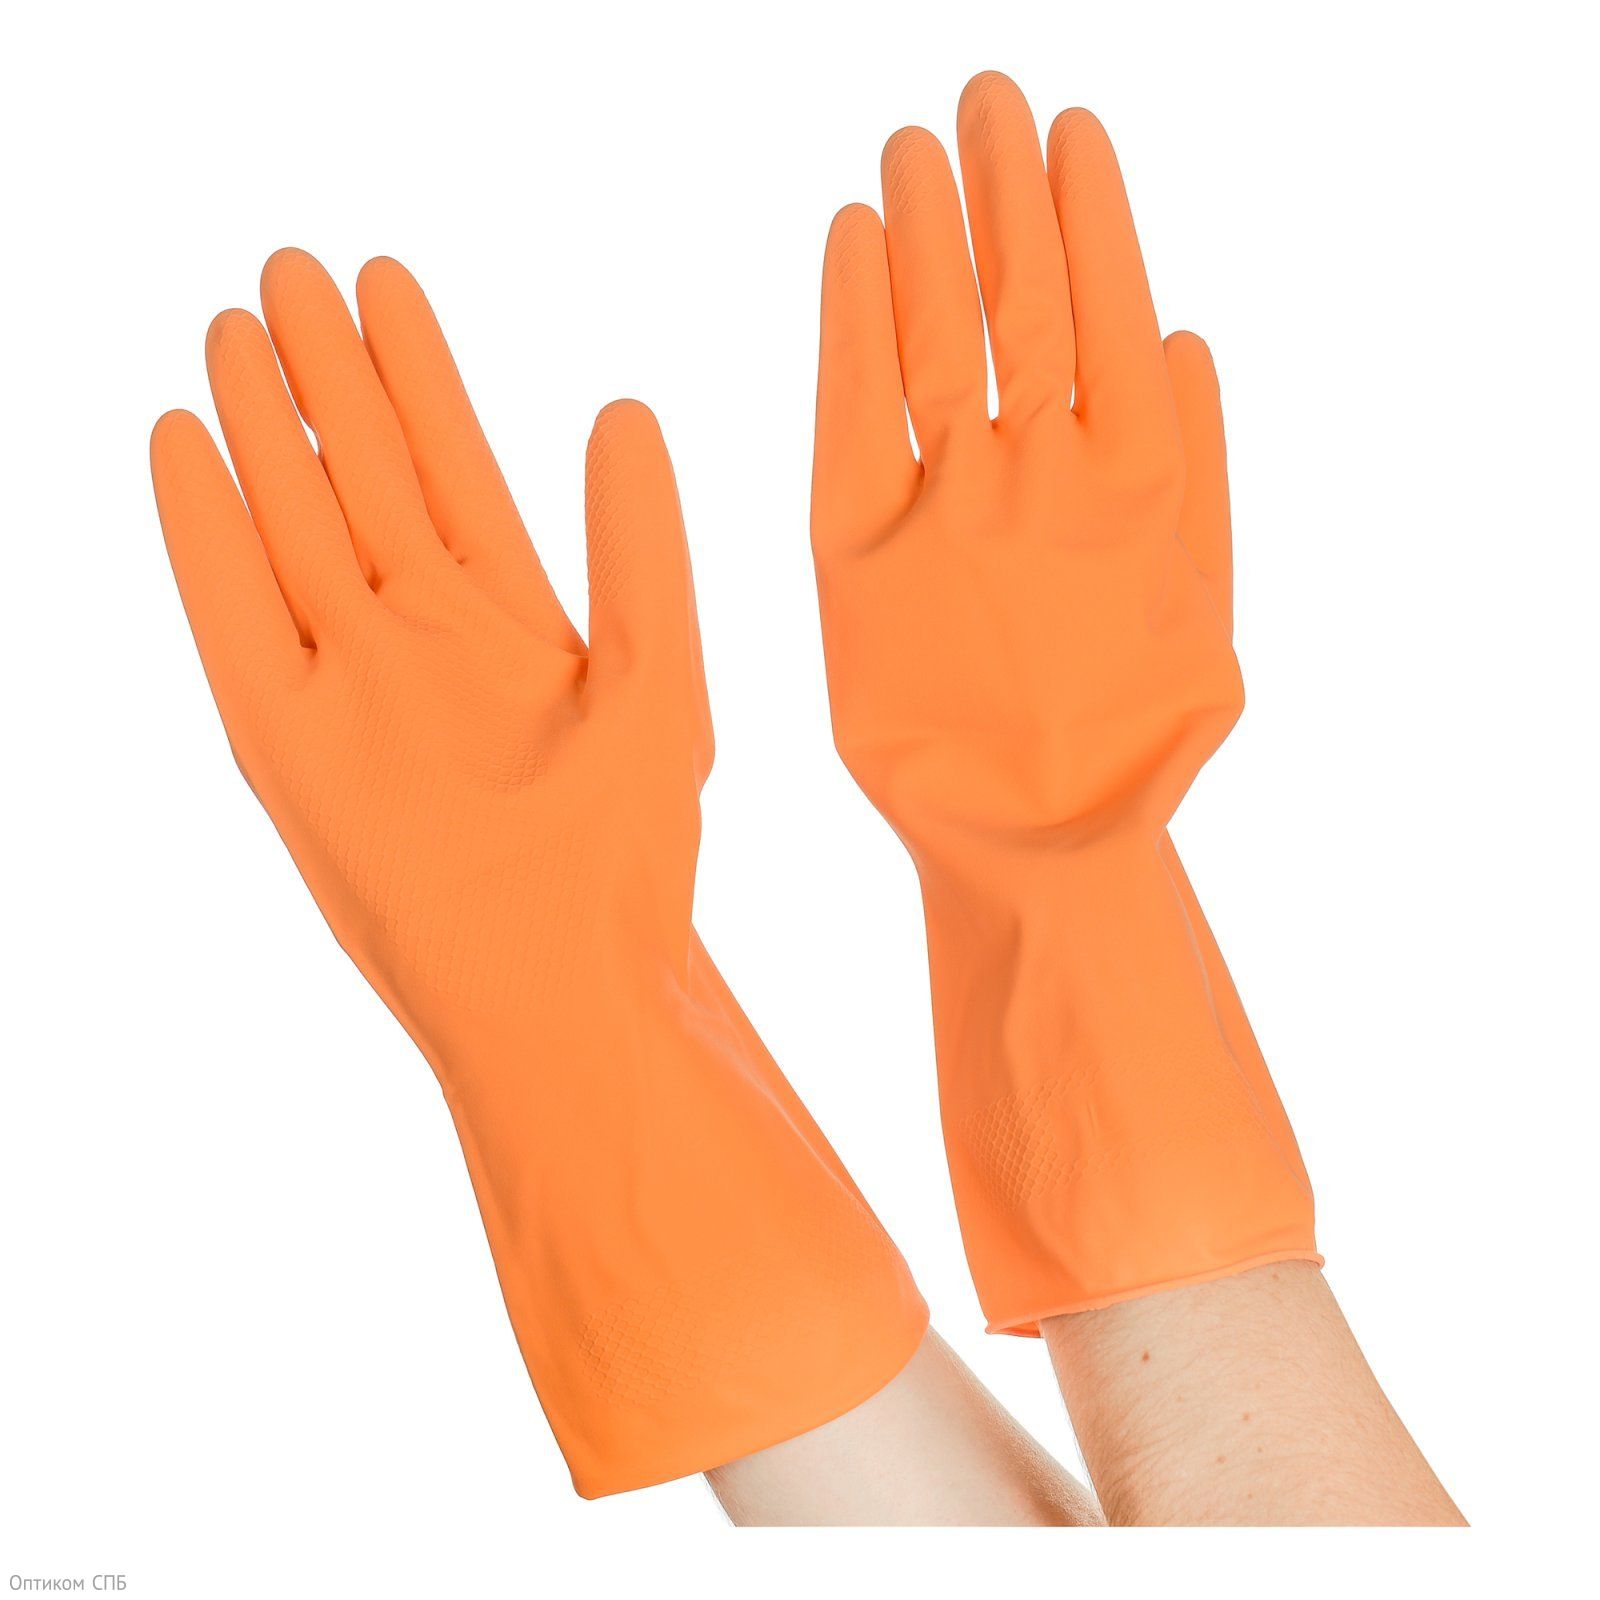 Перчатки резиновые хозяйственные Optiline применяются для защиты рук во время уборки, стирки, мытья посуды, садовых и ремонтных рабор. Надежно защищают руки от воздействия влаги, грязи, механических повреждений. Внутреннее напыление из хлопка обеспечивает комфорт при использовании, позволяет легко снимать и надевать перчатки. Имеют противоскользящий текстурированный рисунок на ладони и пальцах для надежного захвата предметов. Размер S. Поставляются в полиэтиленовой упаковке.